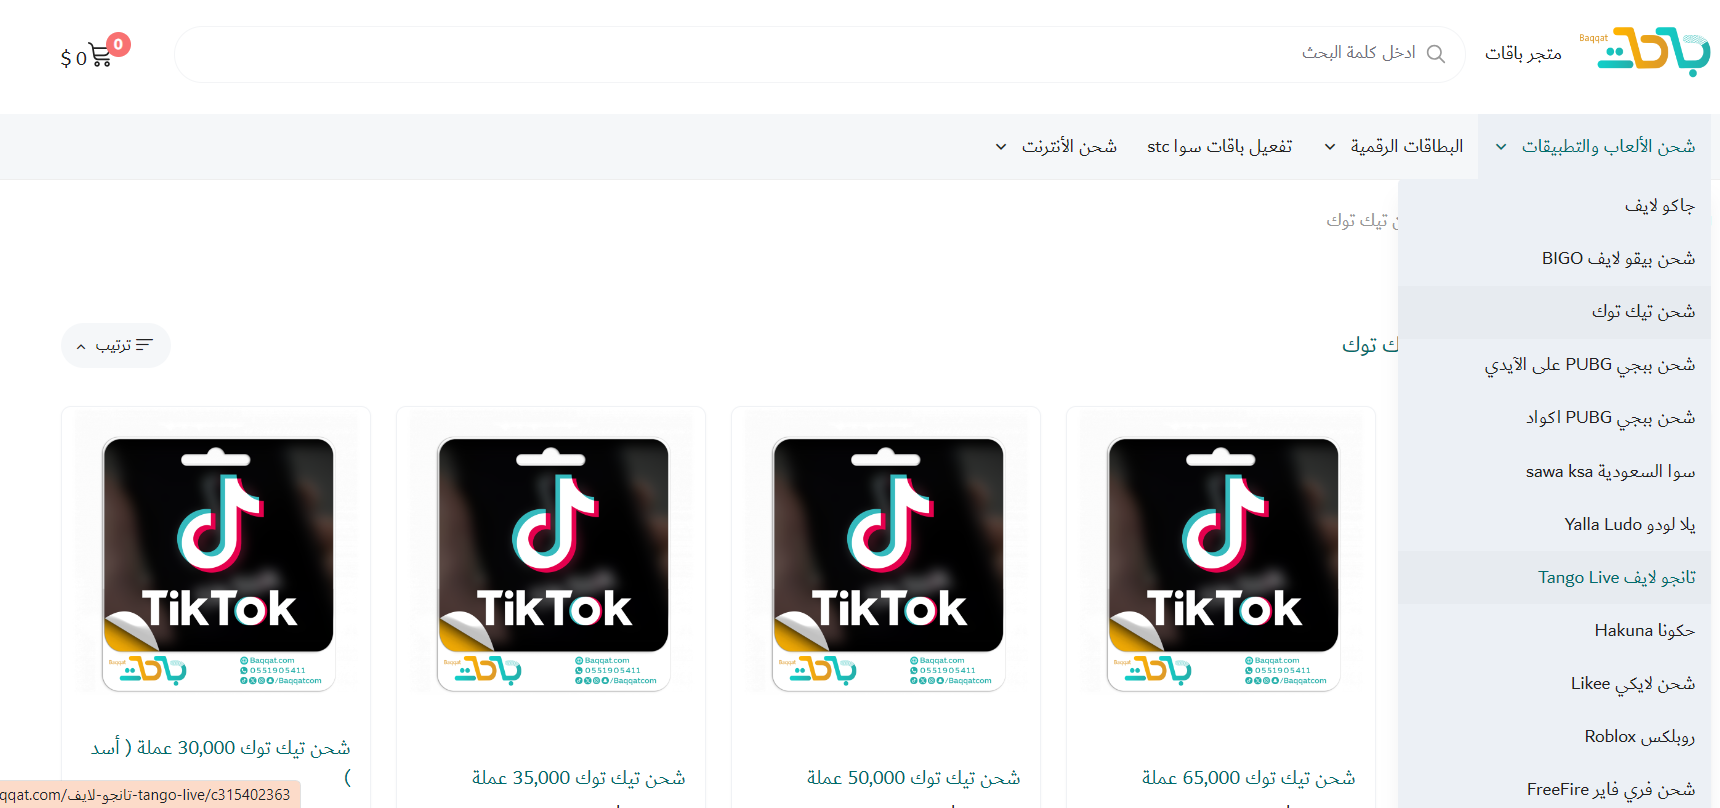 أفضل موقع شحن تيك توك رخيص Baqqat TikTok شراء عملات تيك توك وإعادة شحنها لإرسال الهدايا